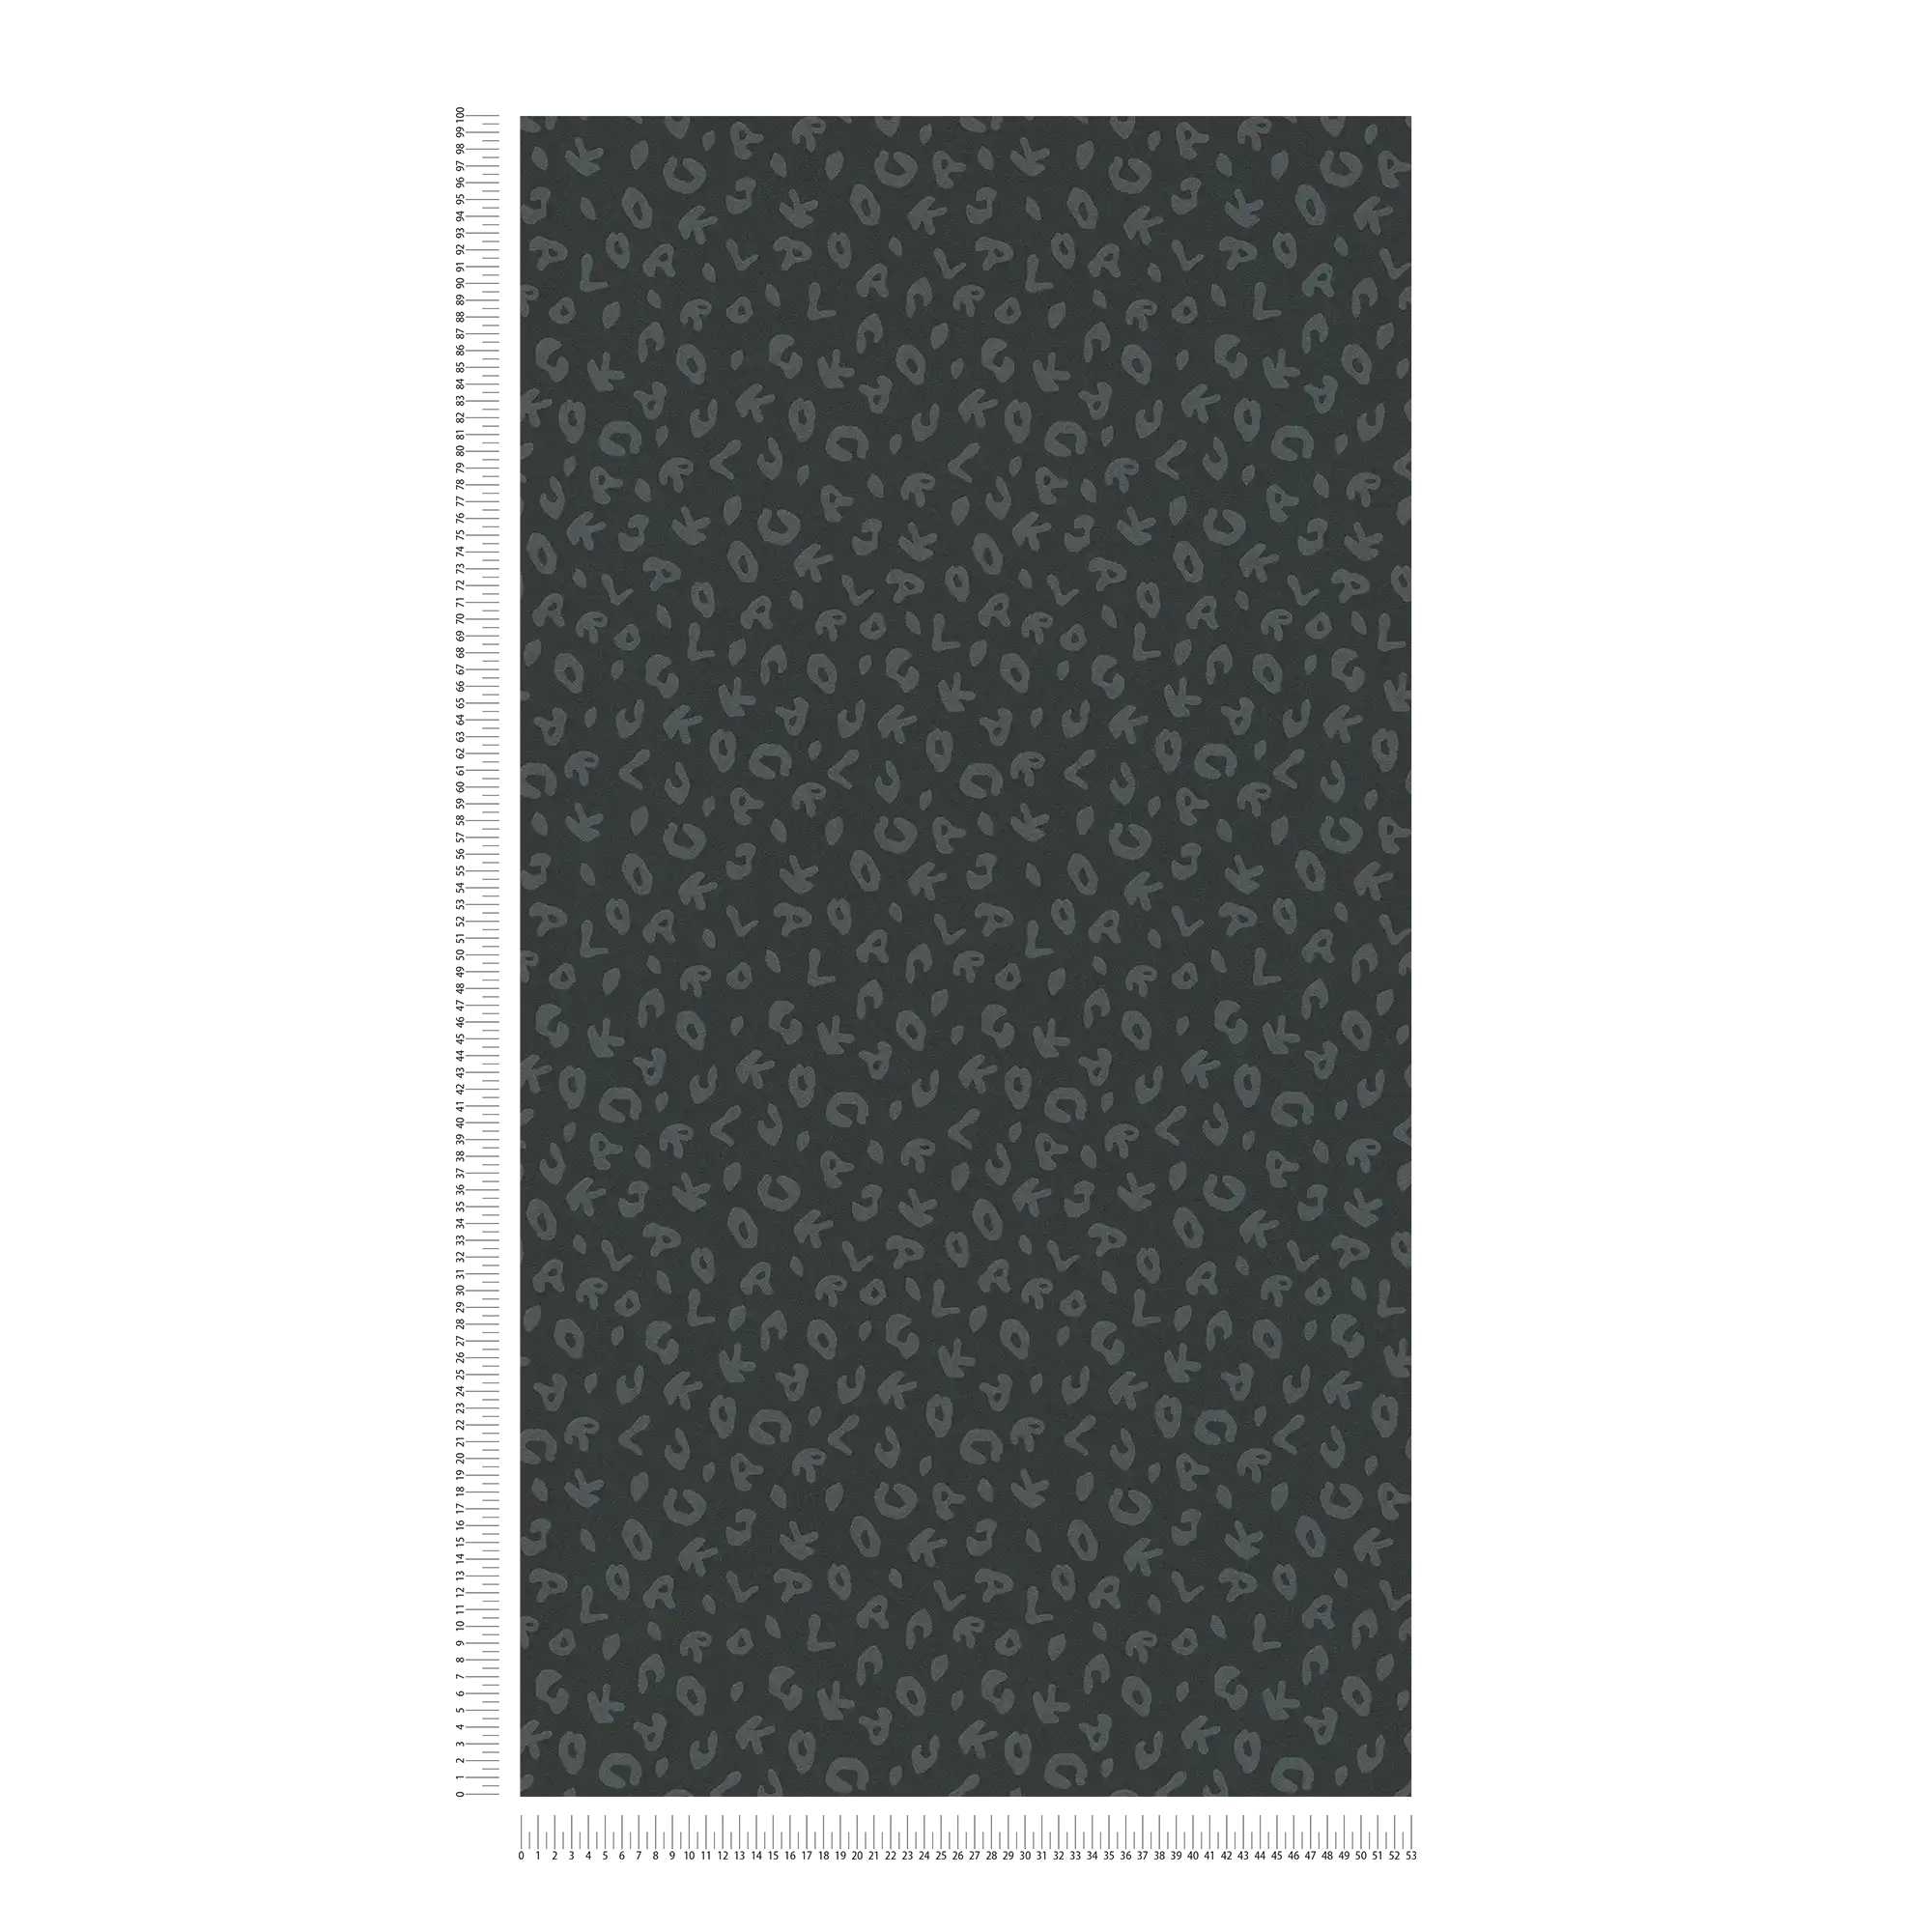             Carta da parati Karl LAGERFELD con stampa leopardo argento - metallizzata, nero
        